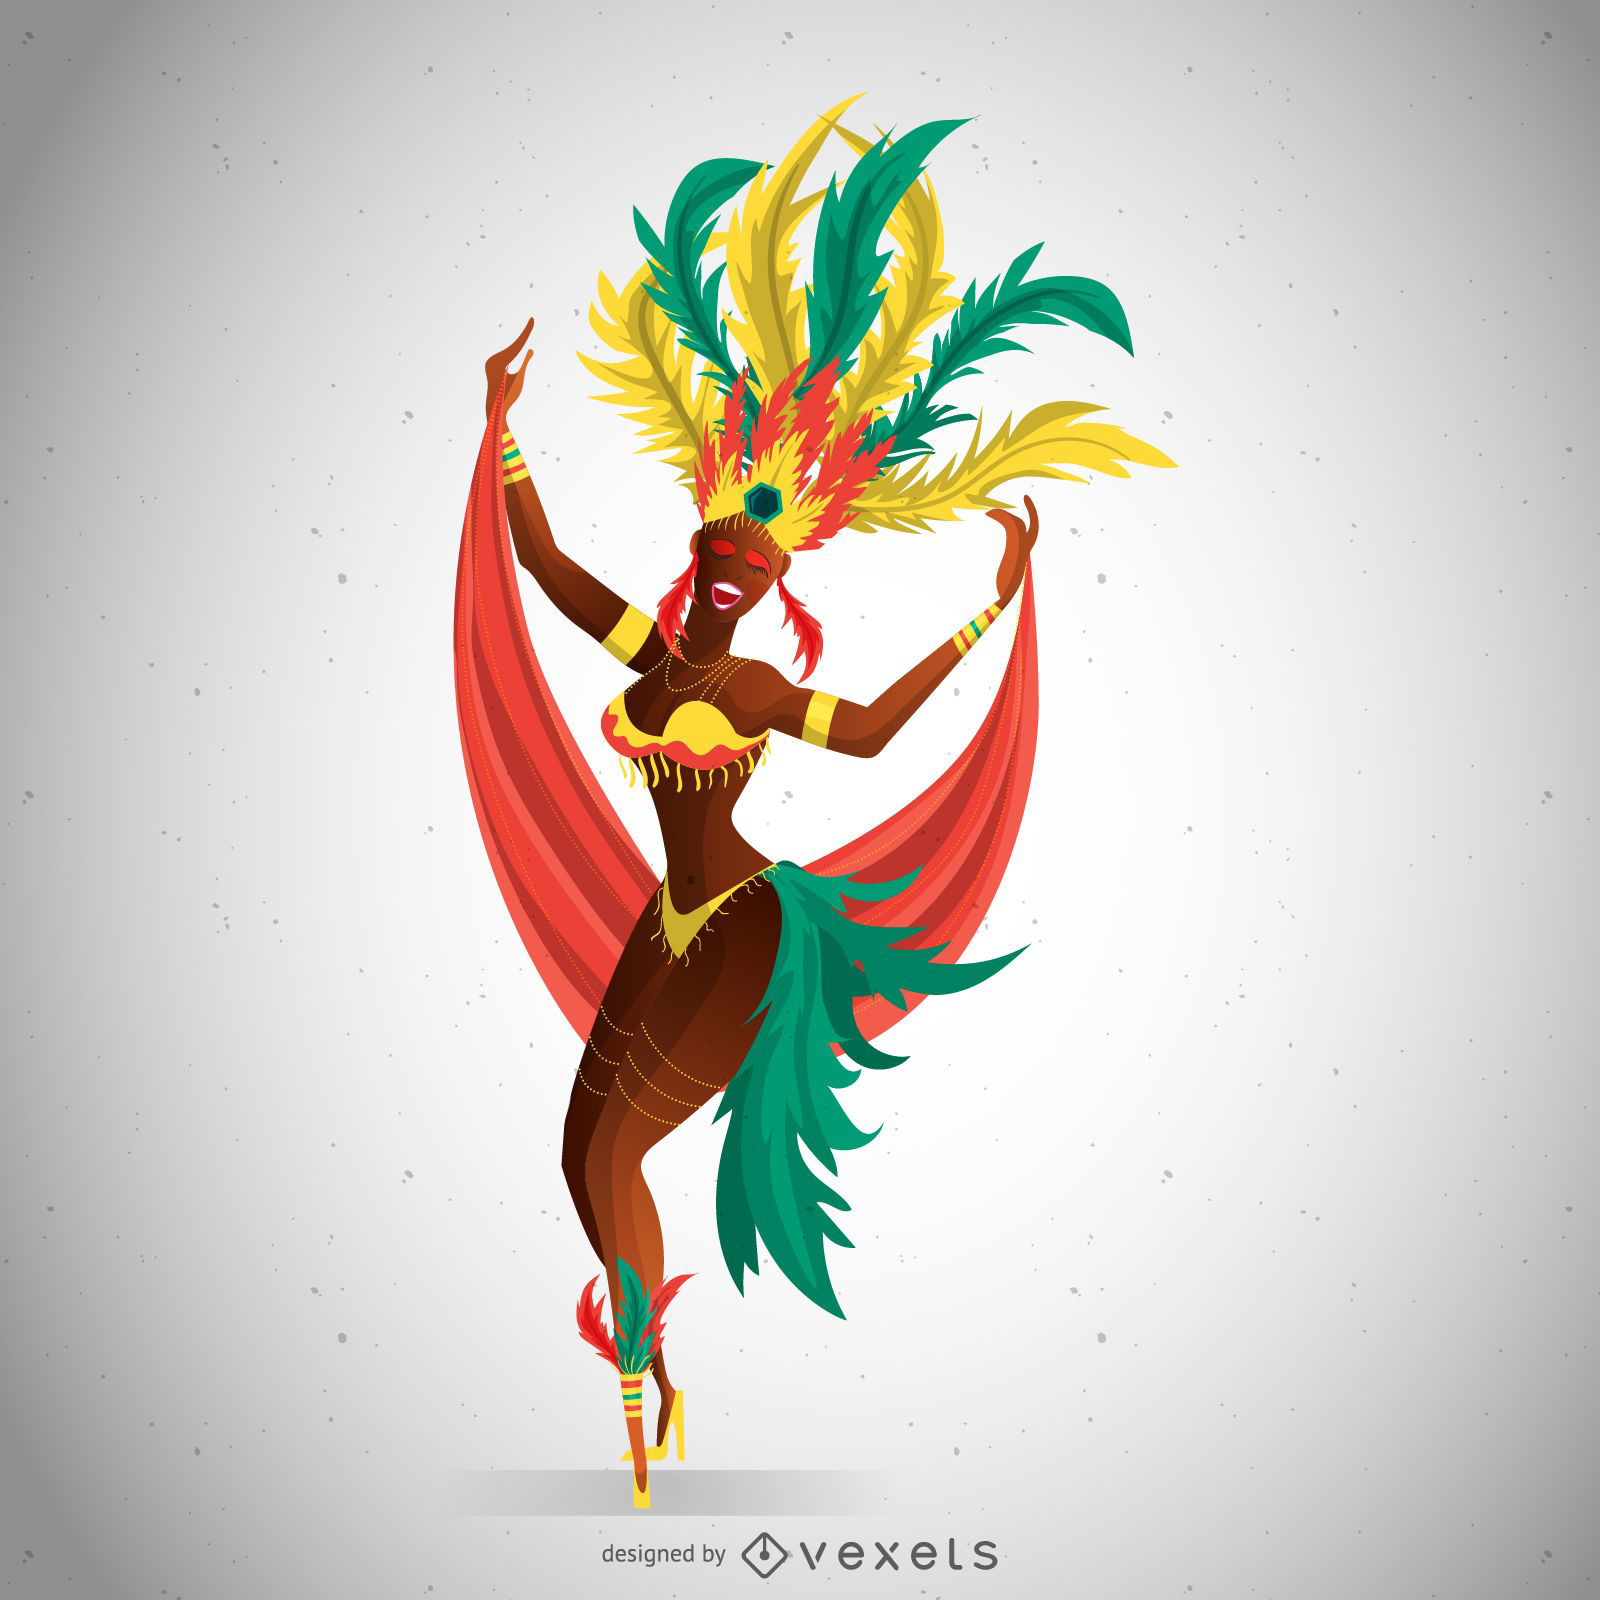 Bailarina de carnaval con traje colorido